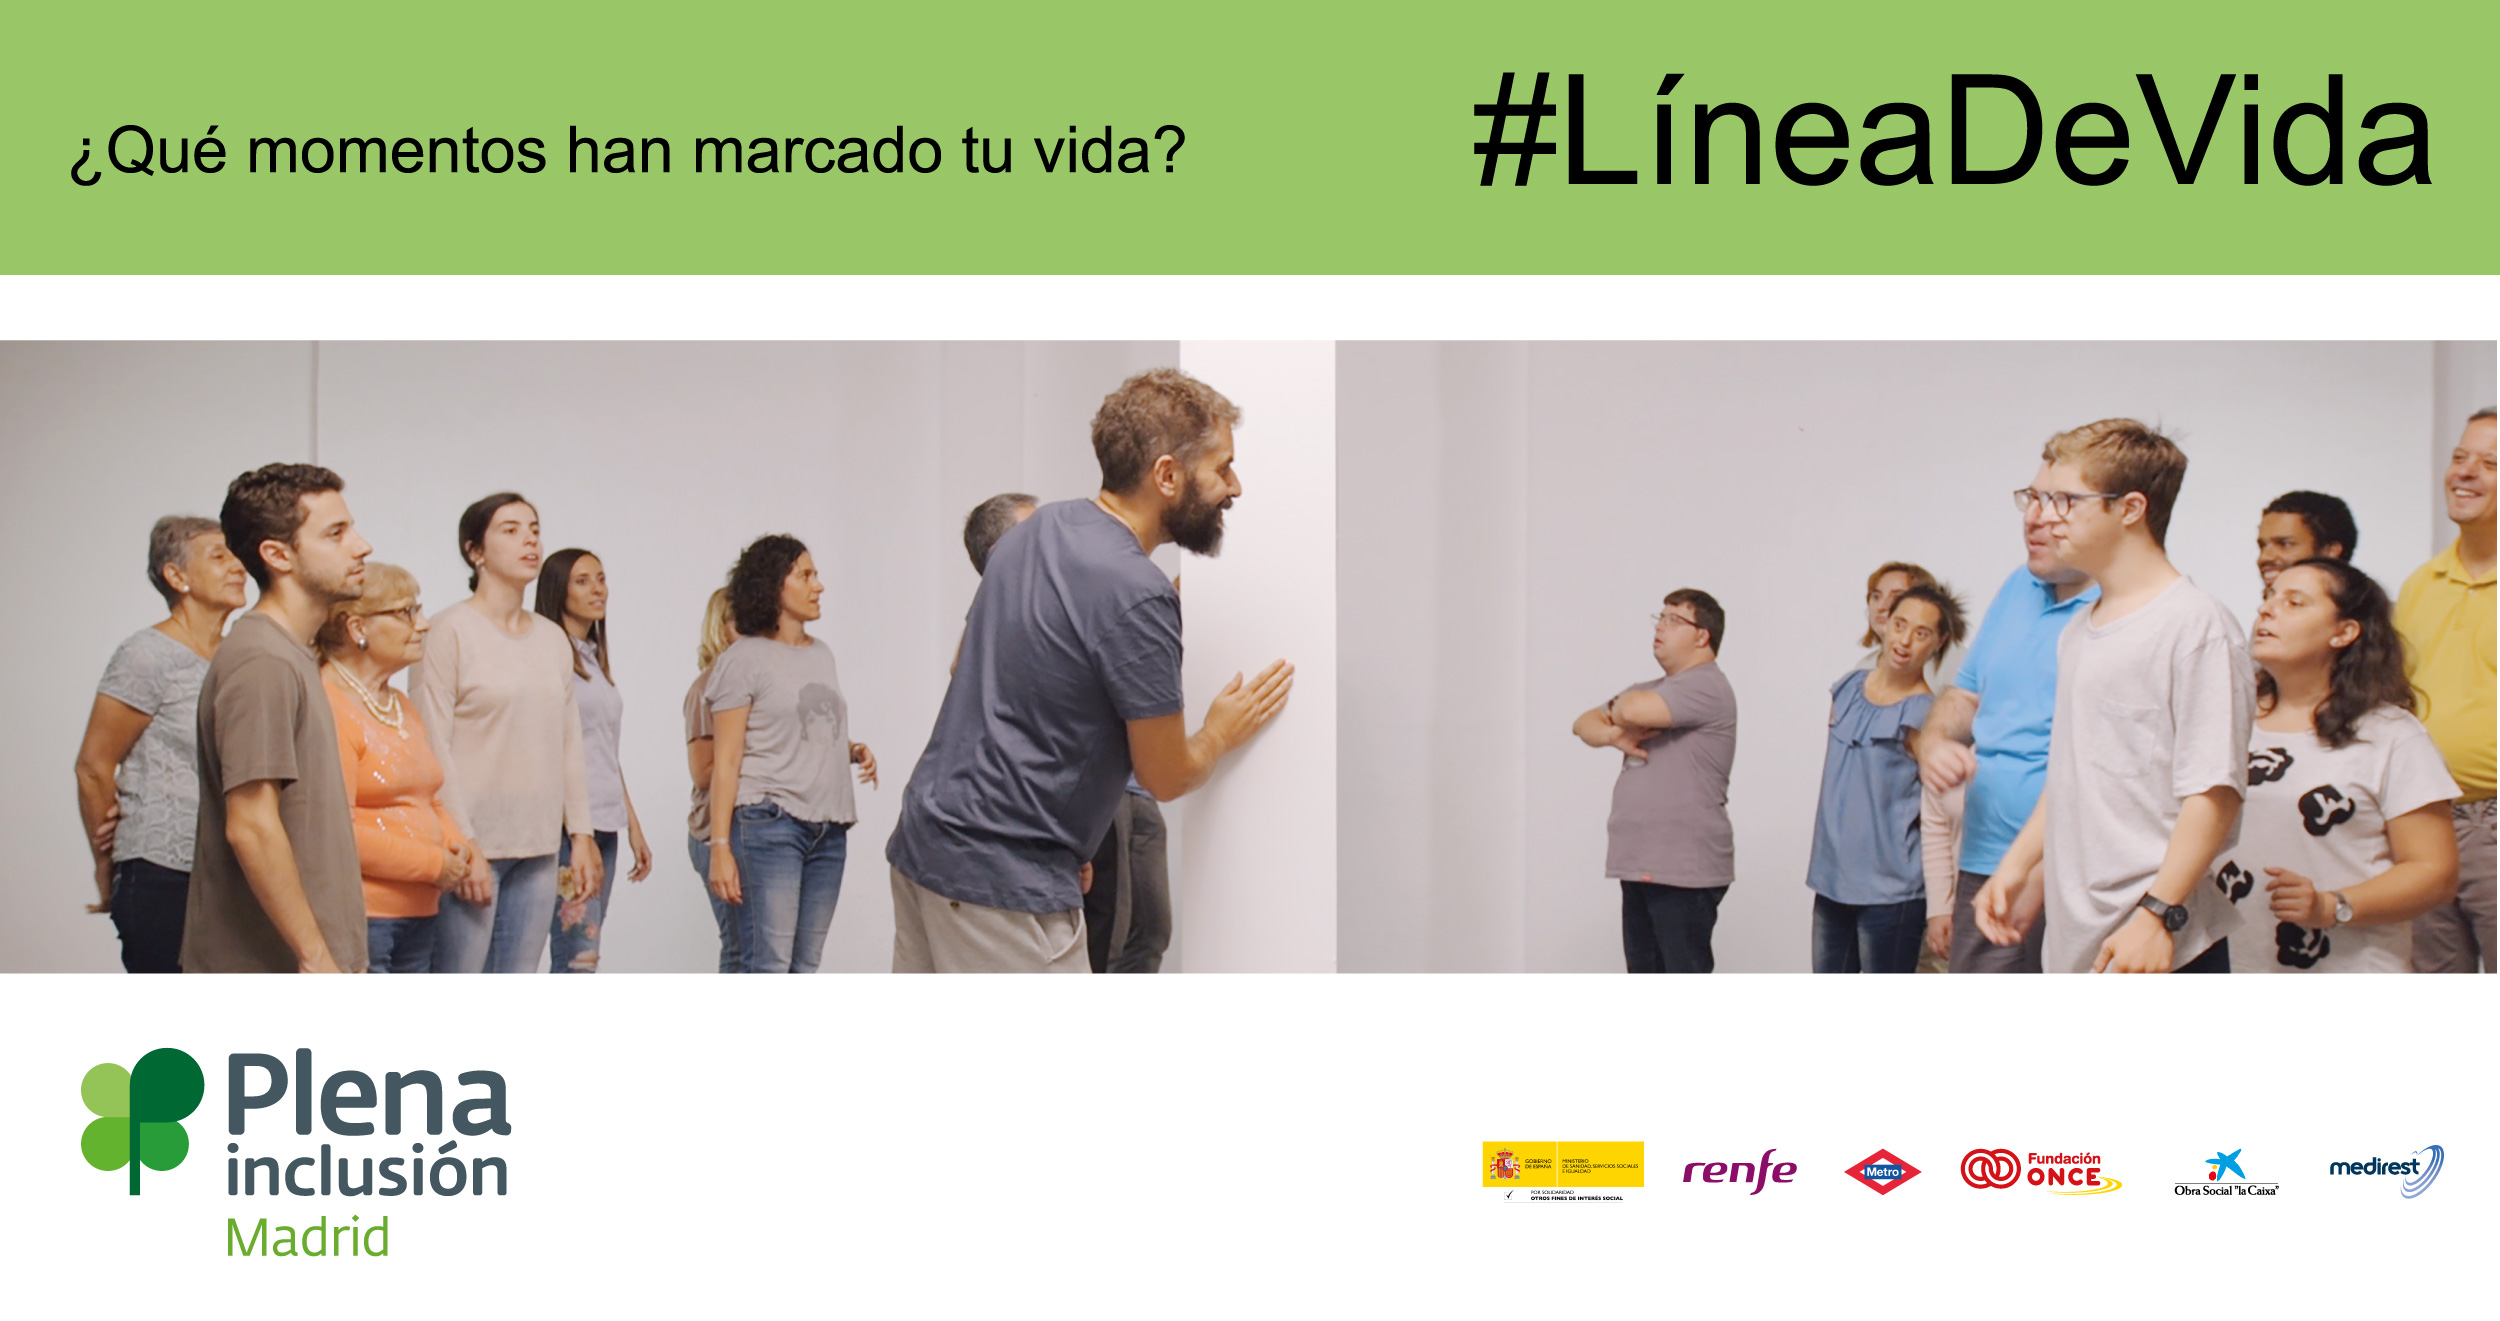 Ir a : Desde hoy, Renfe emitirá en sus trenes la campaña #Líneadevida de Plena inclusión Madrid